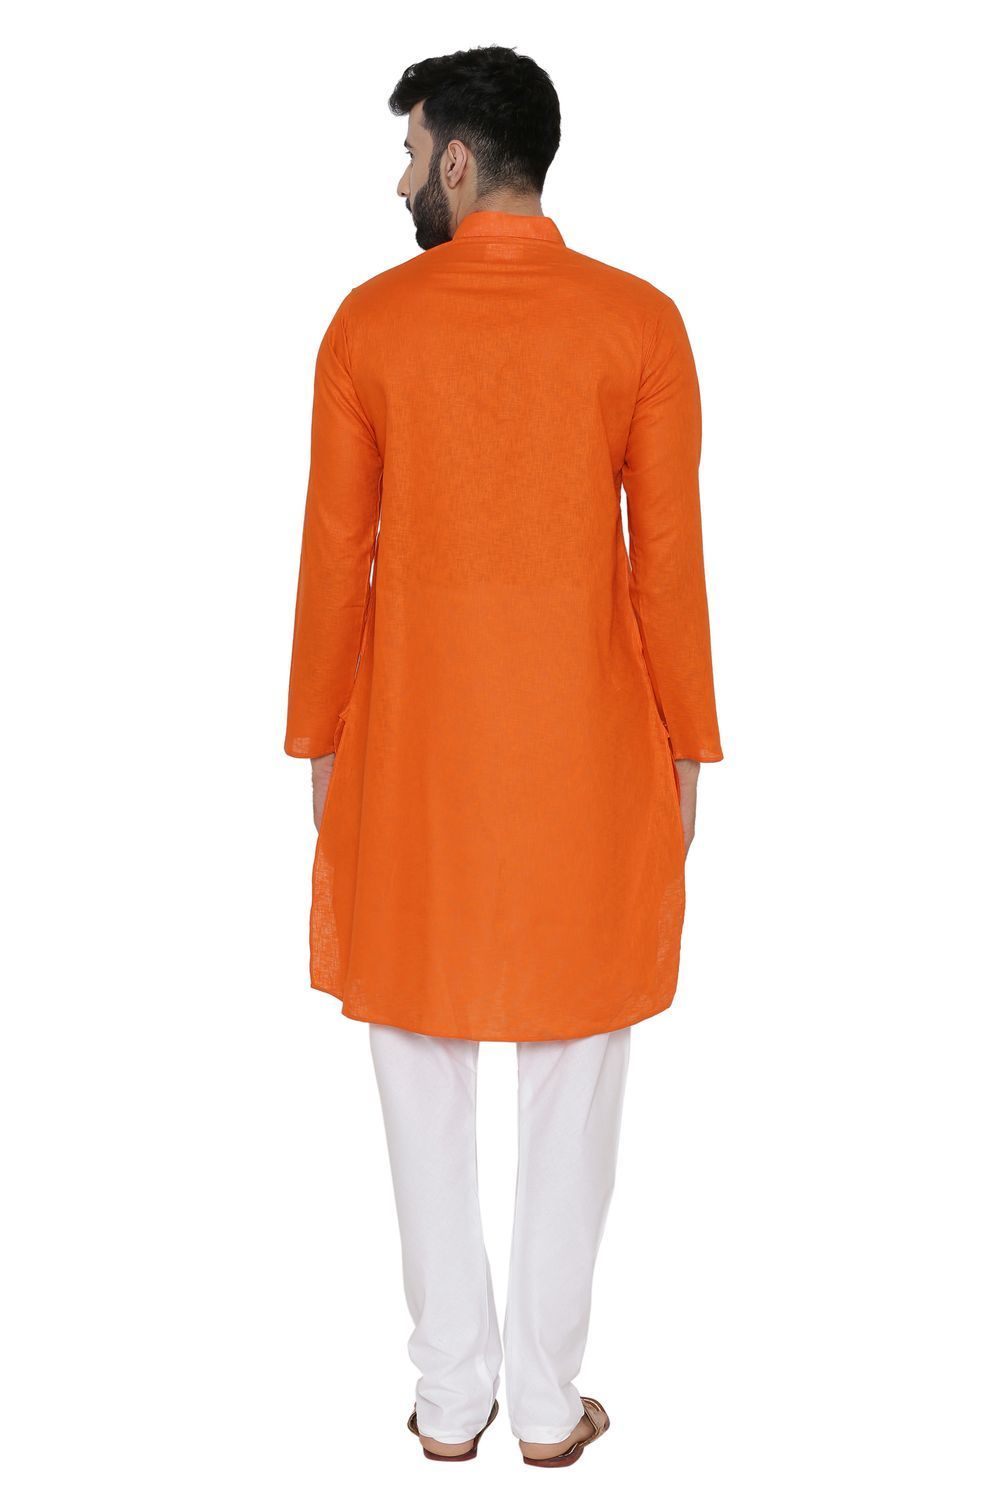 100% Cotton Orange Kurta Pyjama